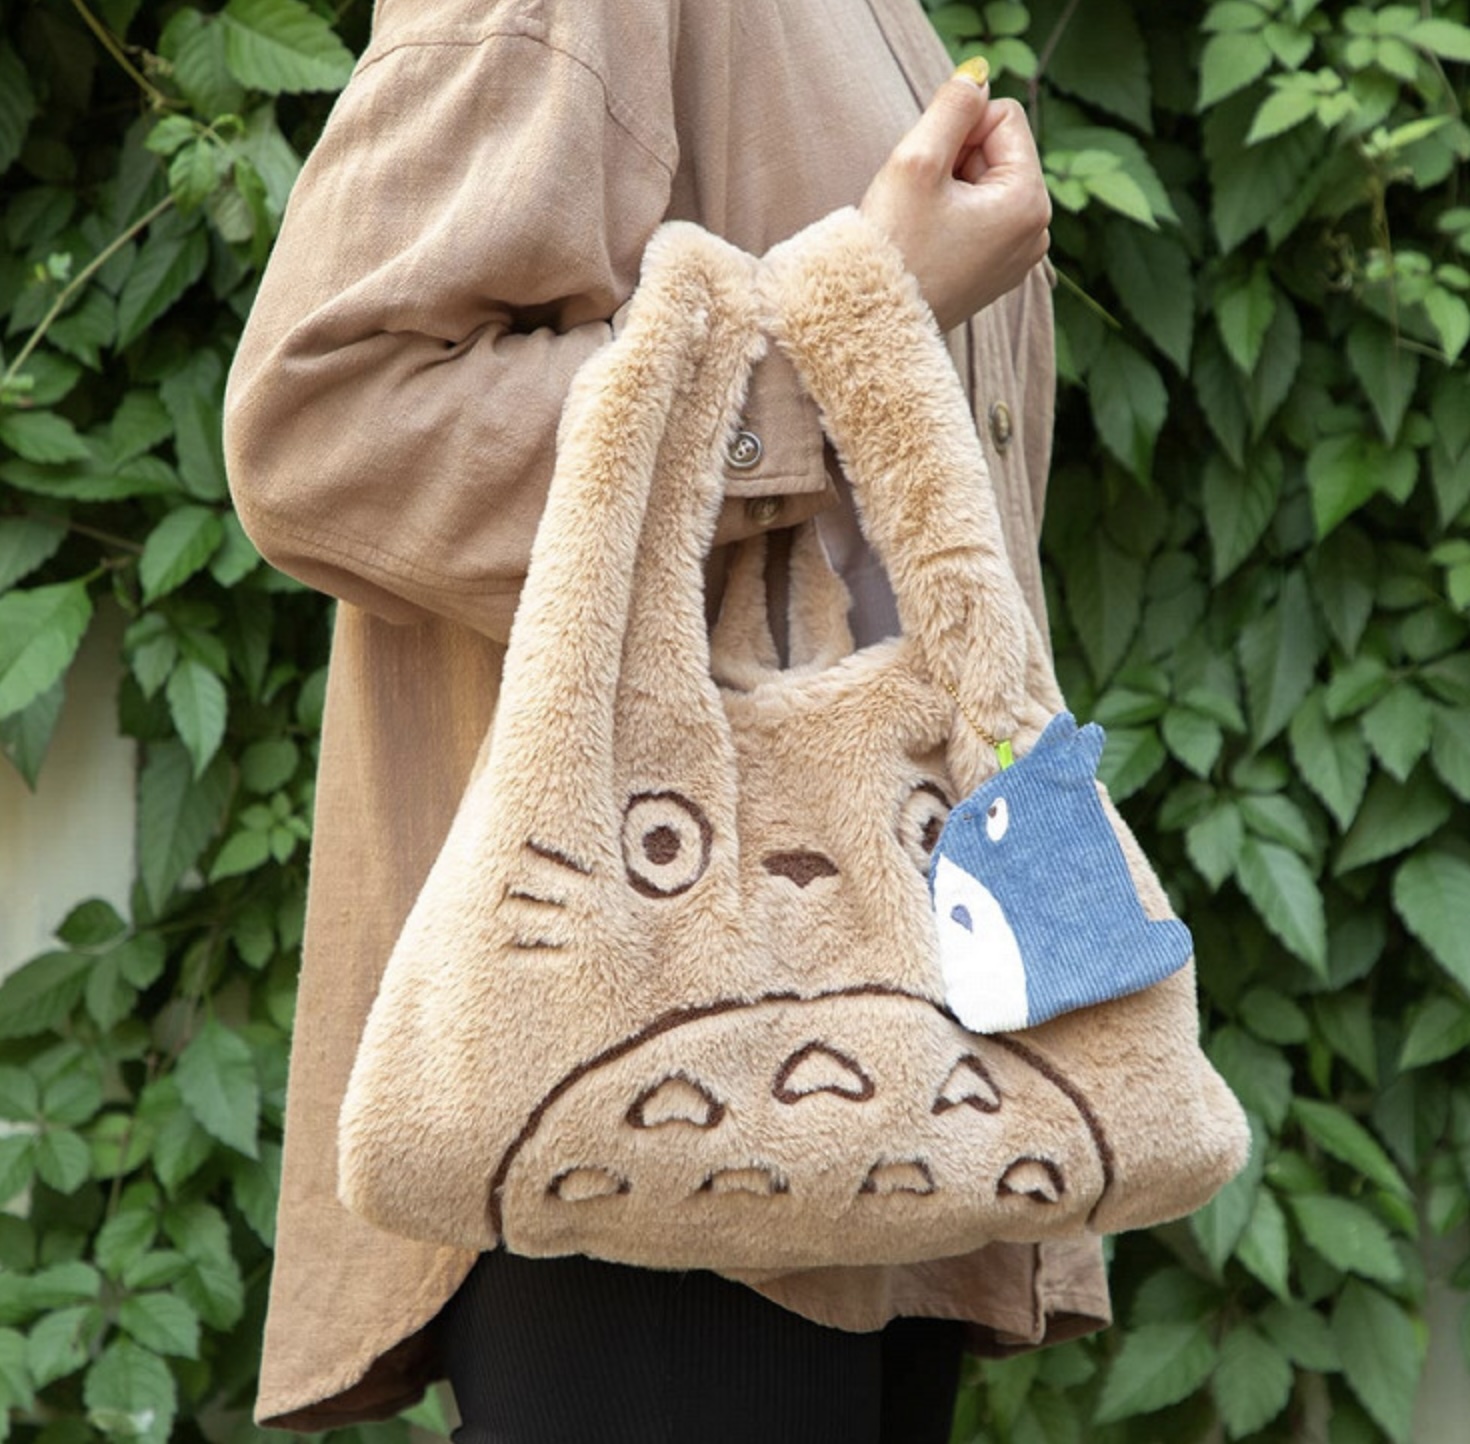 Студия Ghibli выпустила коллекцию сумок по мотивам мультфильма «Мой сосед Тоторо» (фото 2)